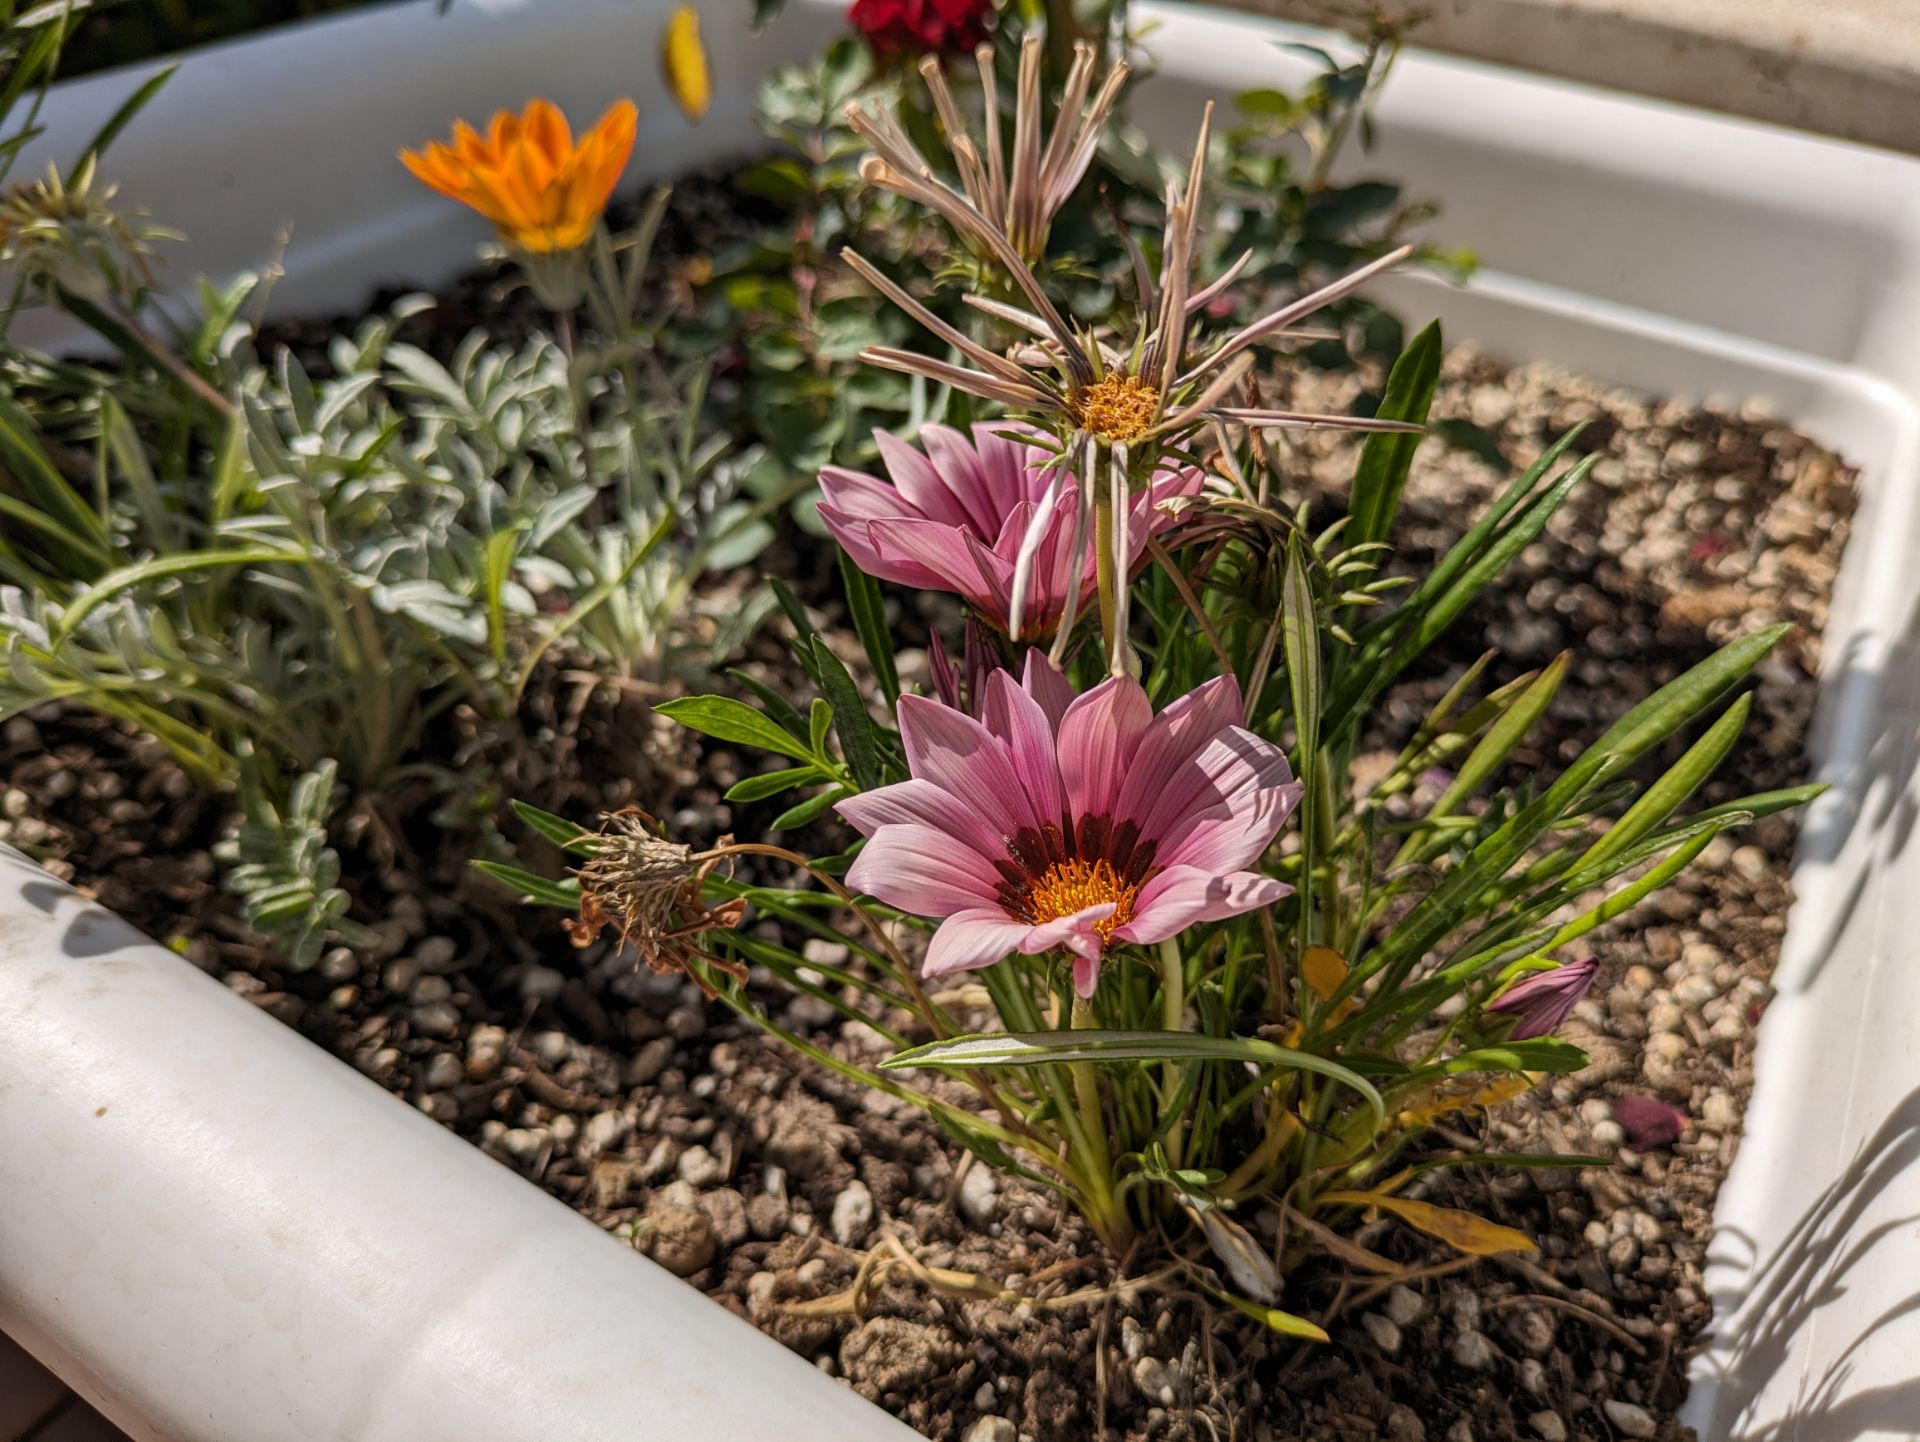 نمونه عکس دوربین اصلی پیکسل 8a در محیط روشن بیرونی از چند گل کوچک درون باغچه